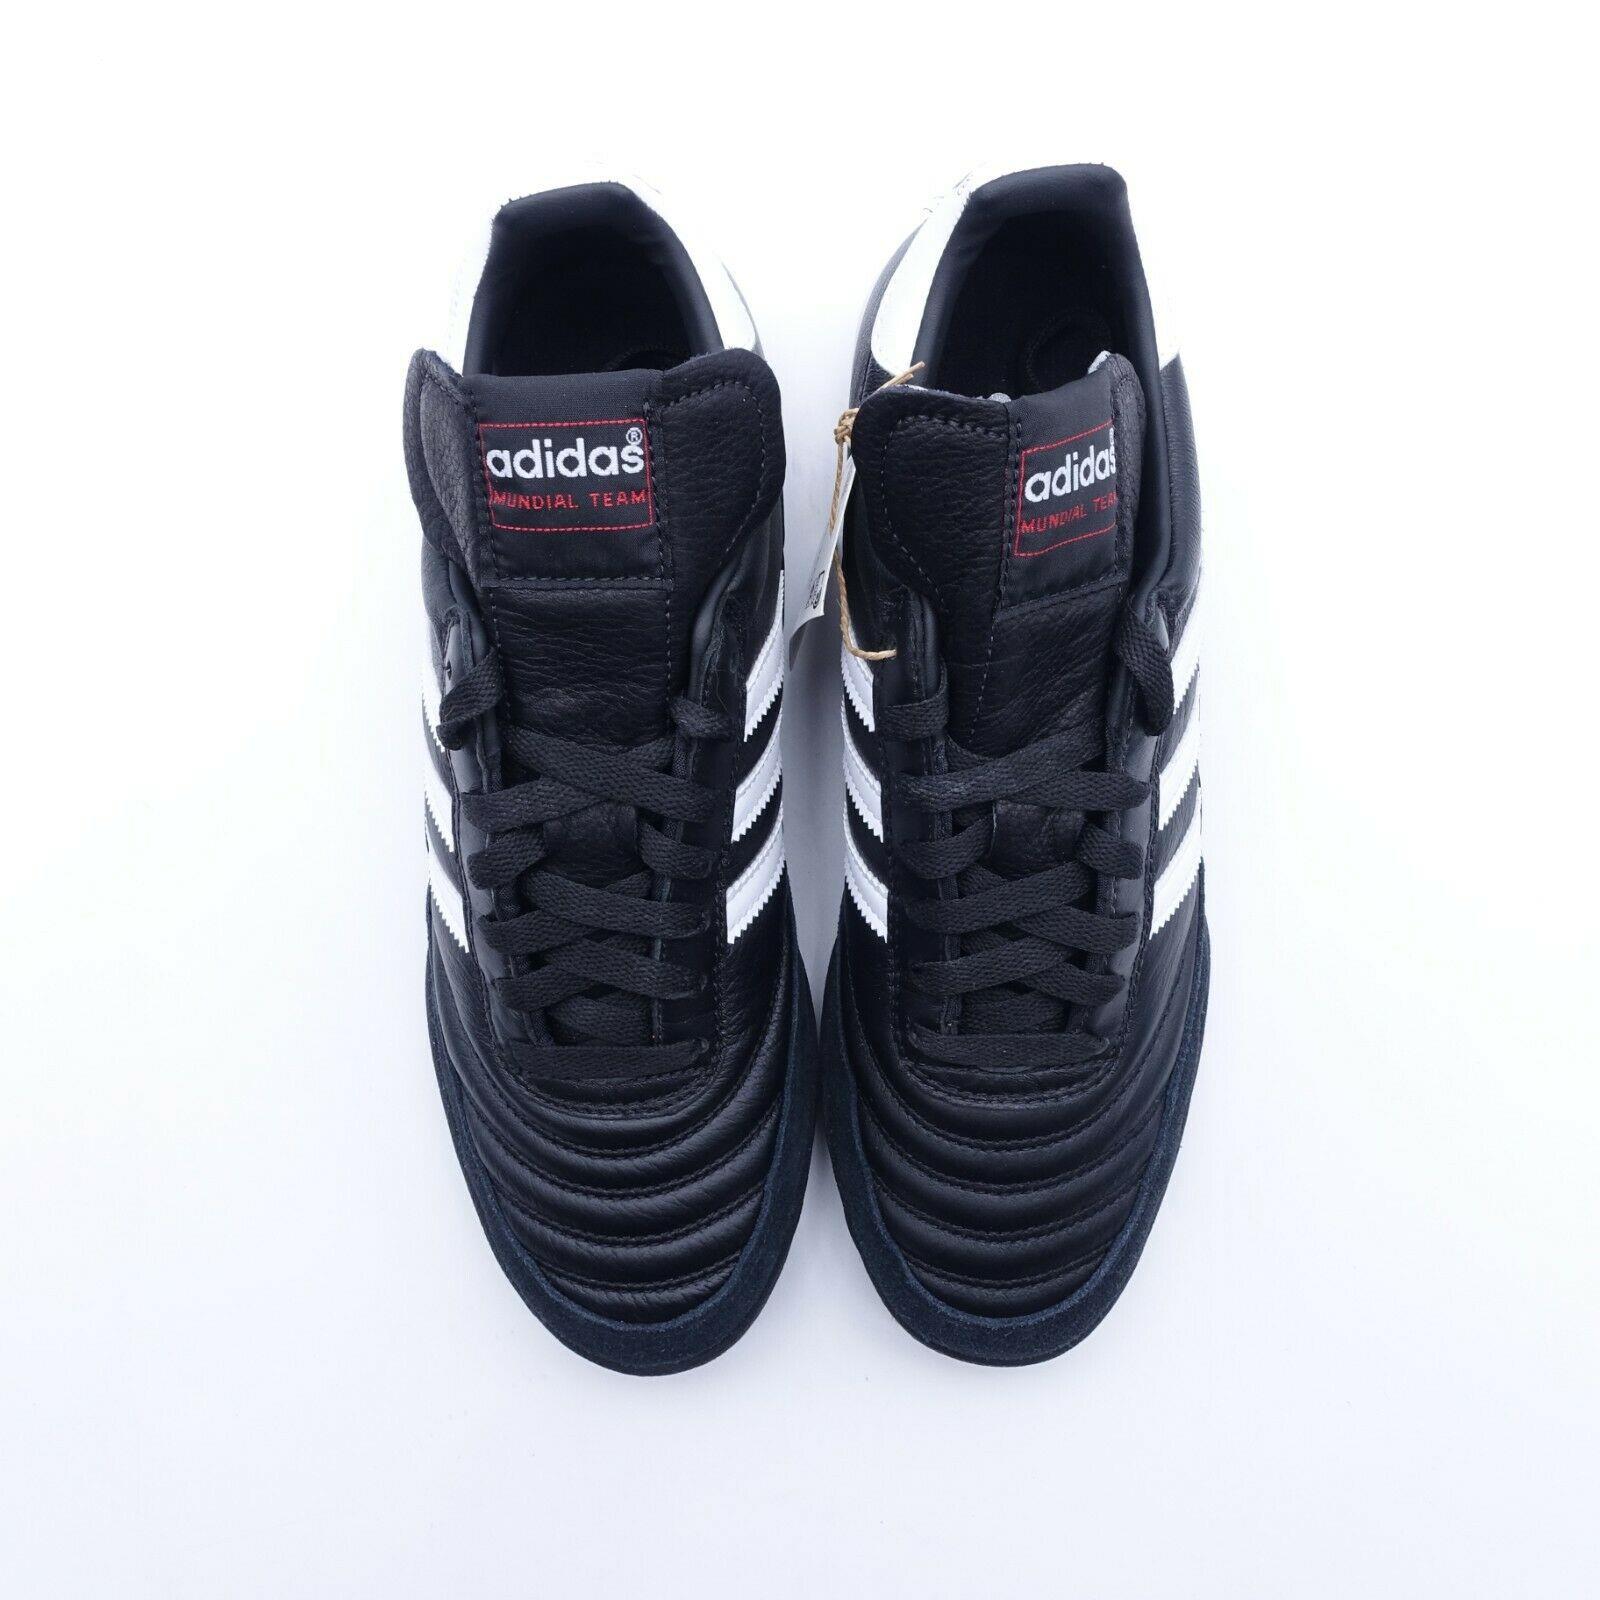 Adidas shoes Mundial Team - Black , Black/White Manufacturer 4